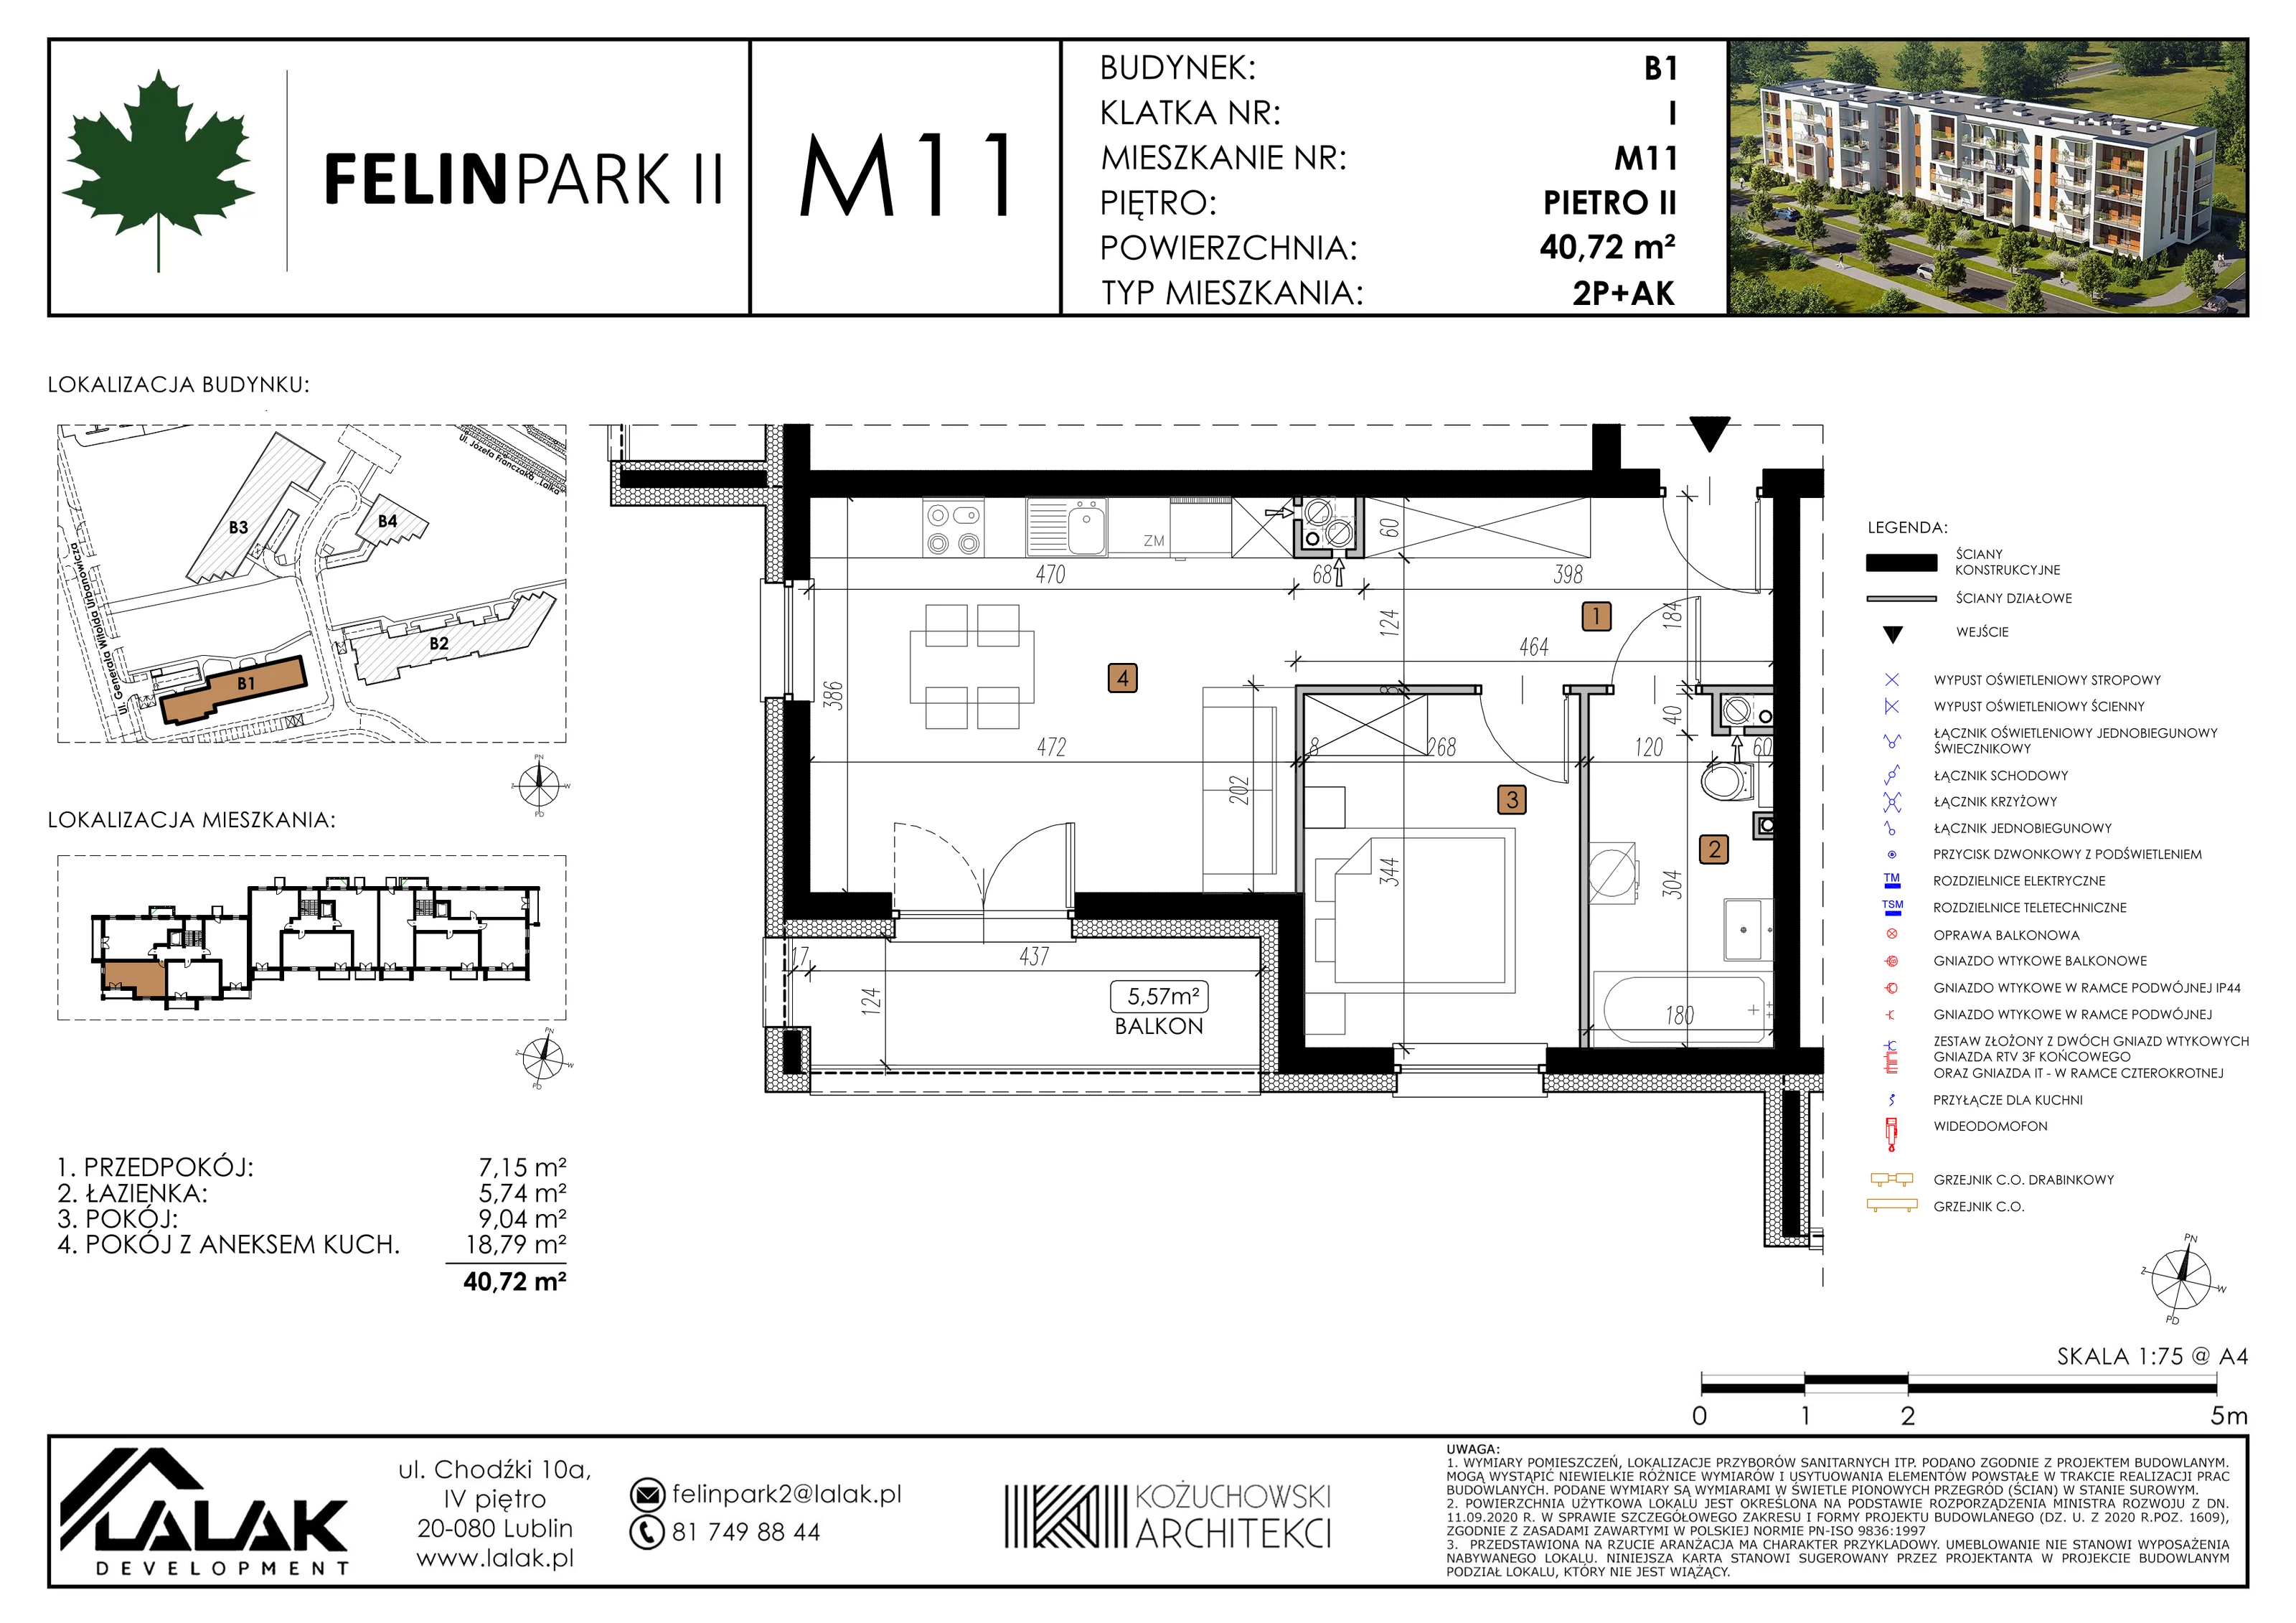 Mieszkanie 40,78 m², piętro 2, oferta nr B1_M11/I, Felin Park II, Lublin, Felin, ul. gen. Stanisława Skalskiego 8-10